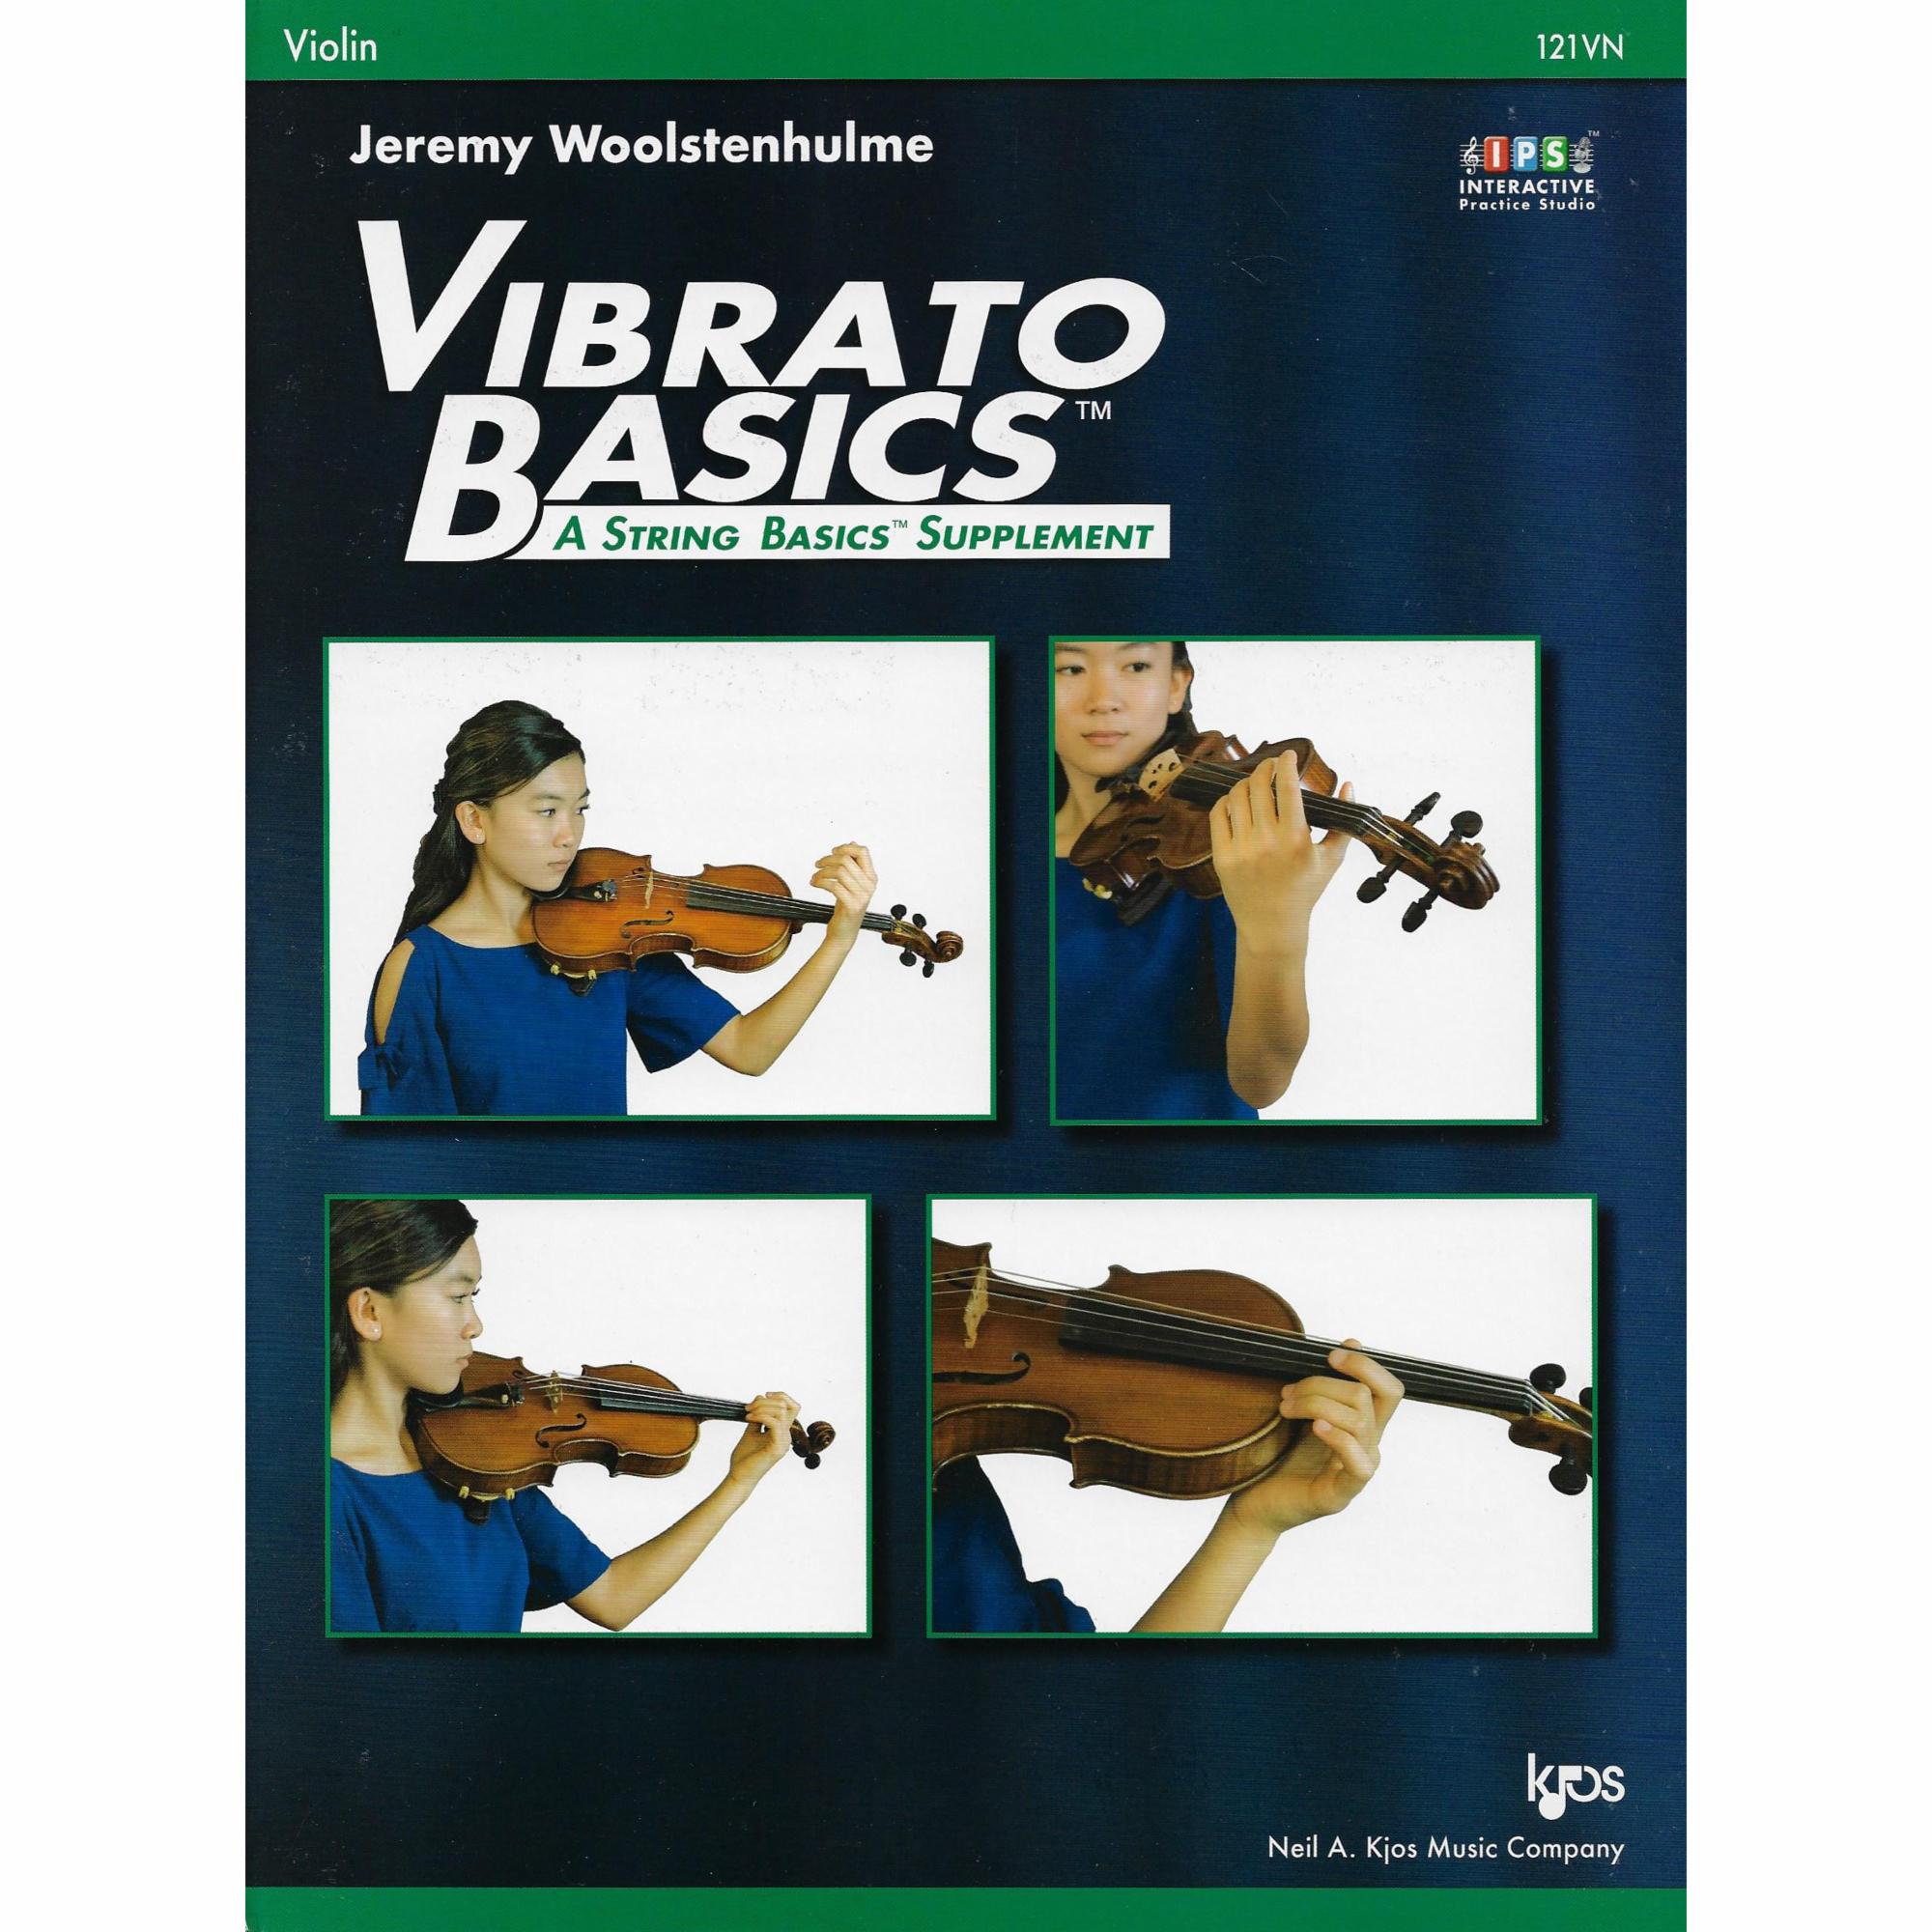 Vibrato Basics: A String Basics Supplement